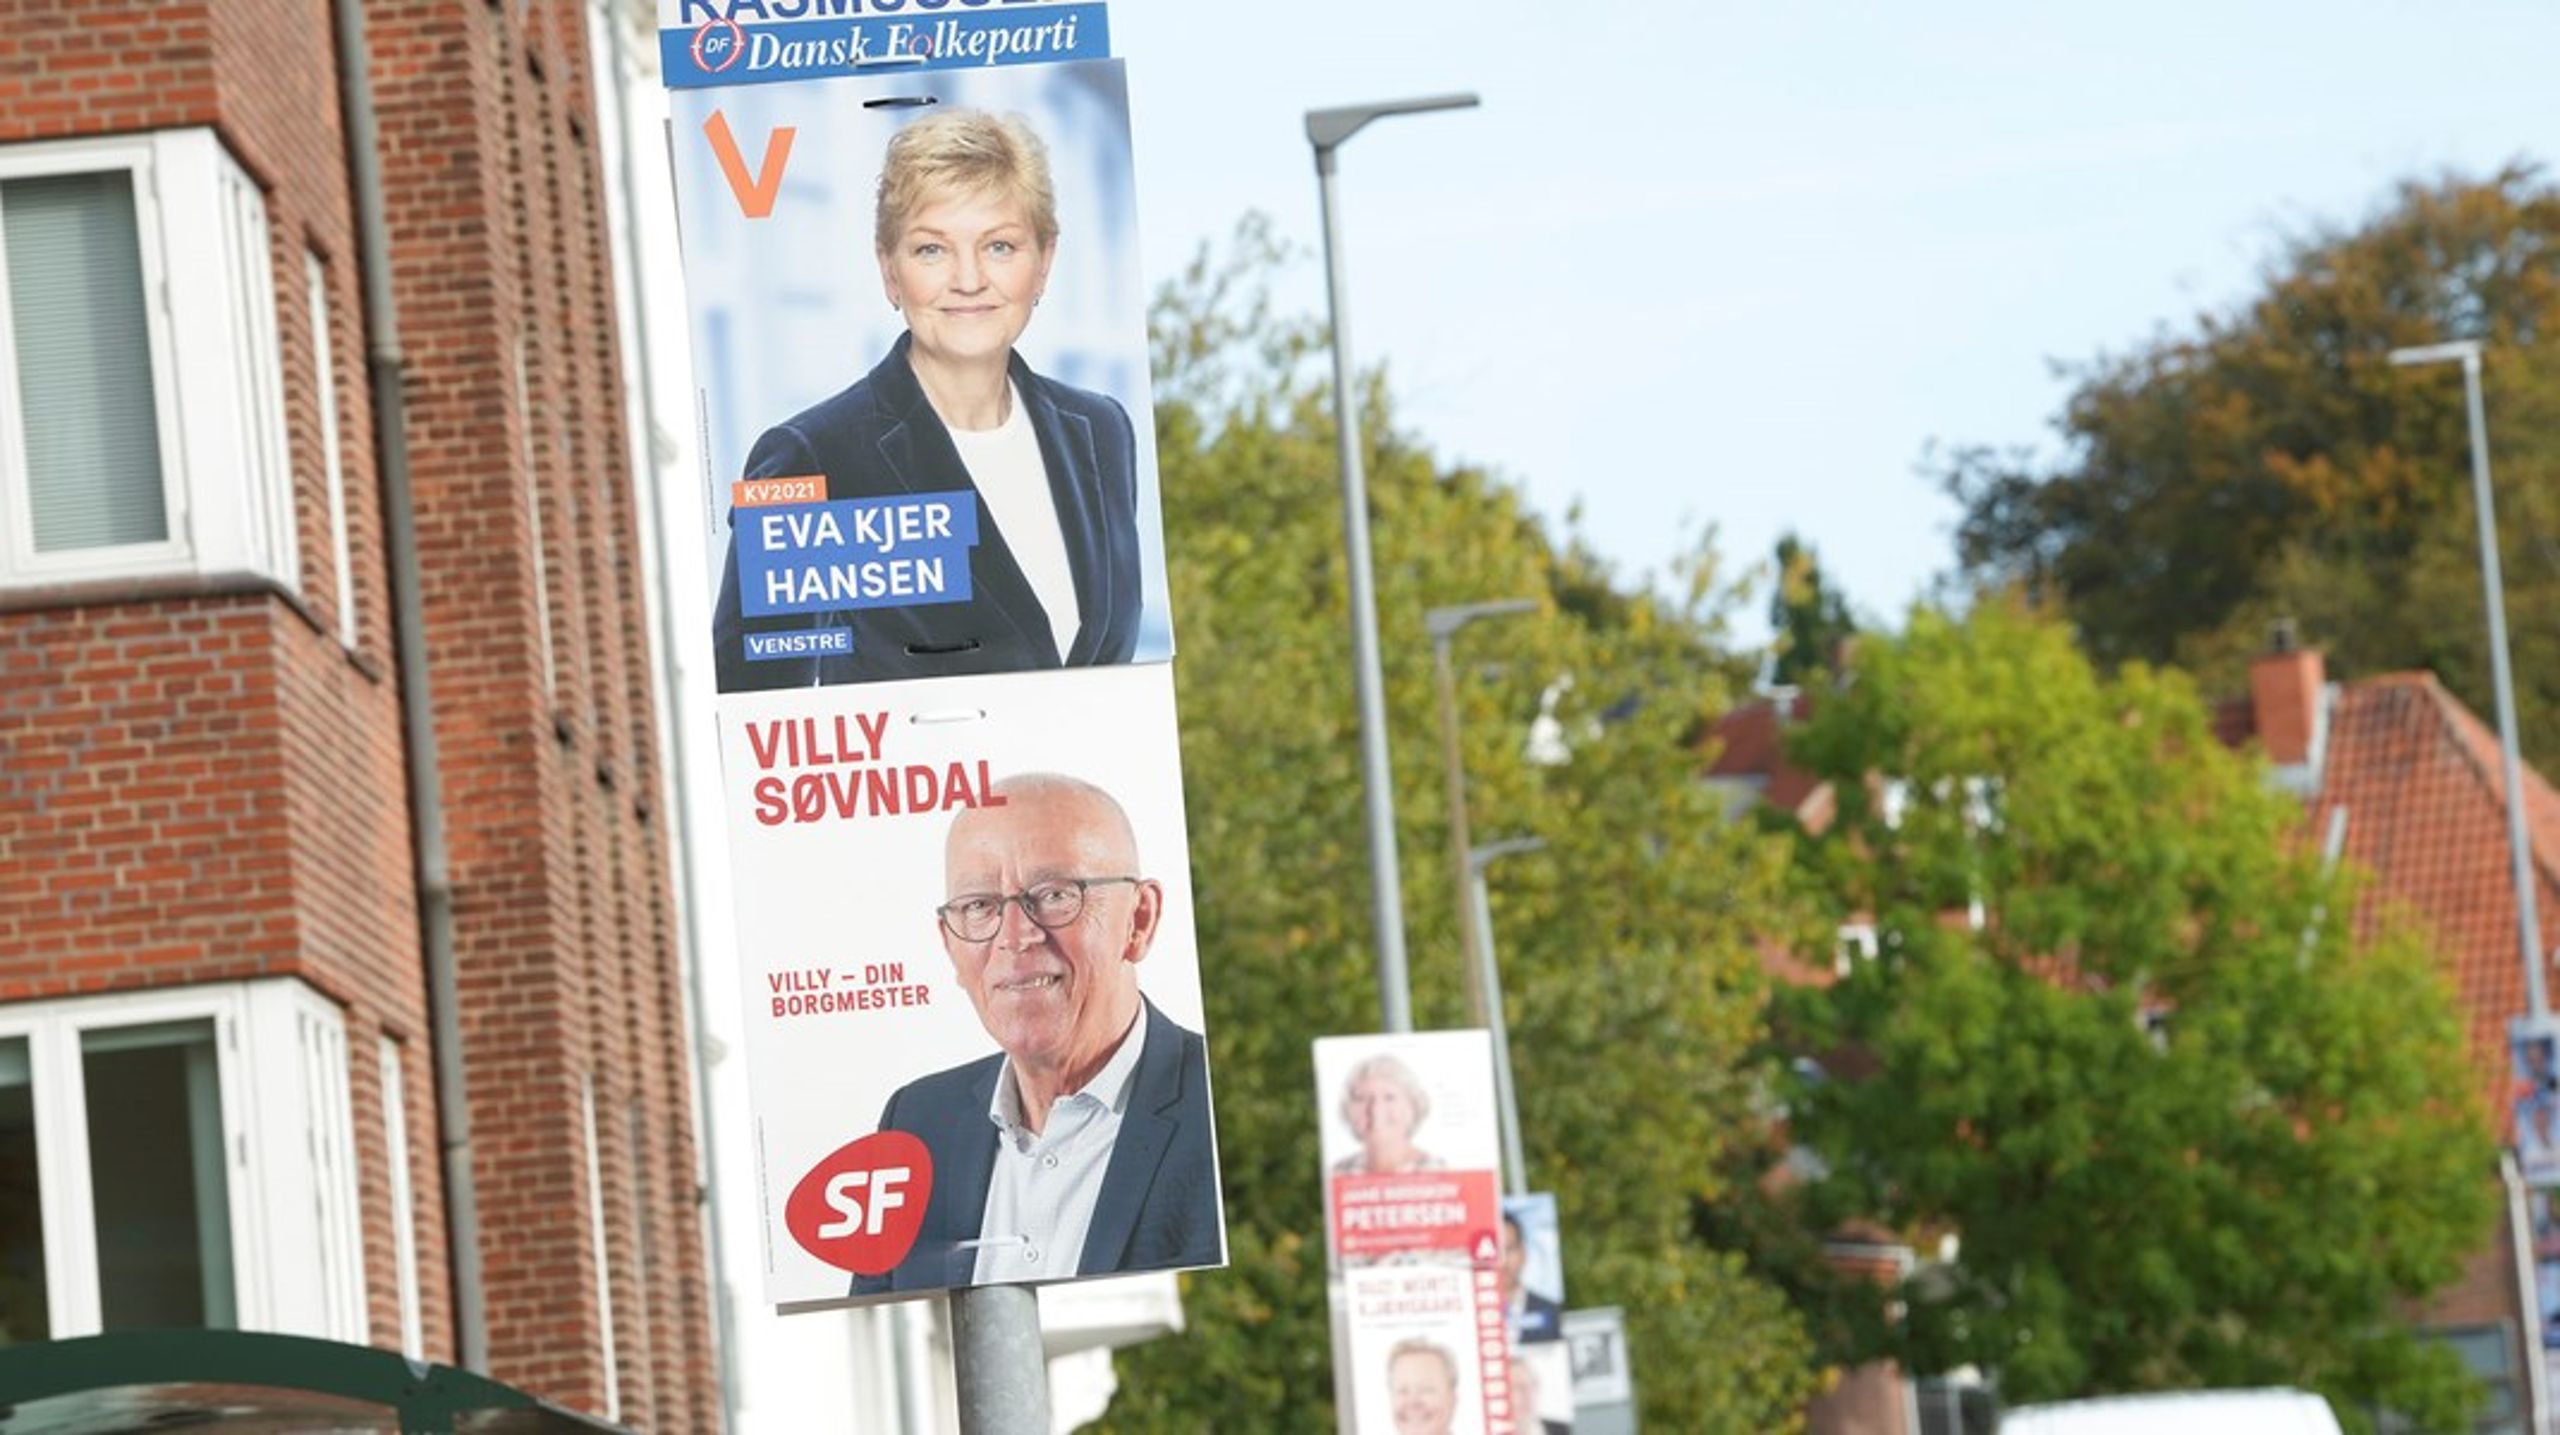 I Kolding kæmper de tidligere ministre Eva Kjer Hansen (V) og Villy Søvndal fra SF et opsigtsvækkende opgør om borgmesterposten. Men der er også mange andre ting at holde øje med, end de spektakulære lokale forhold.